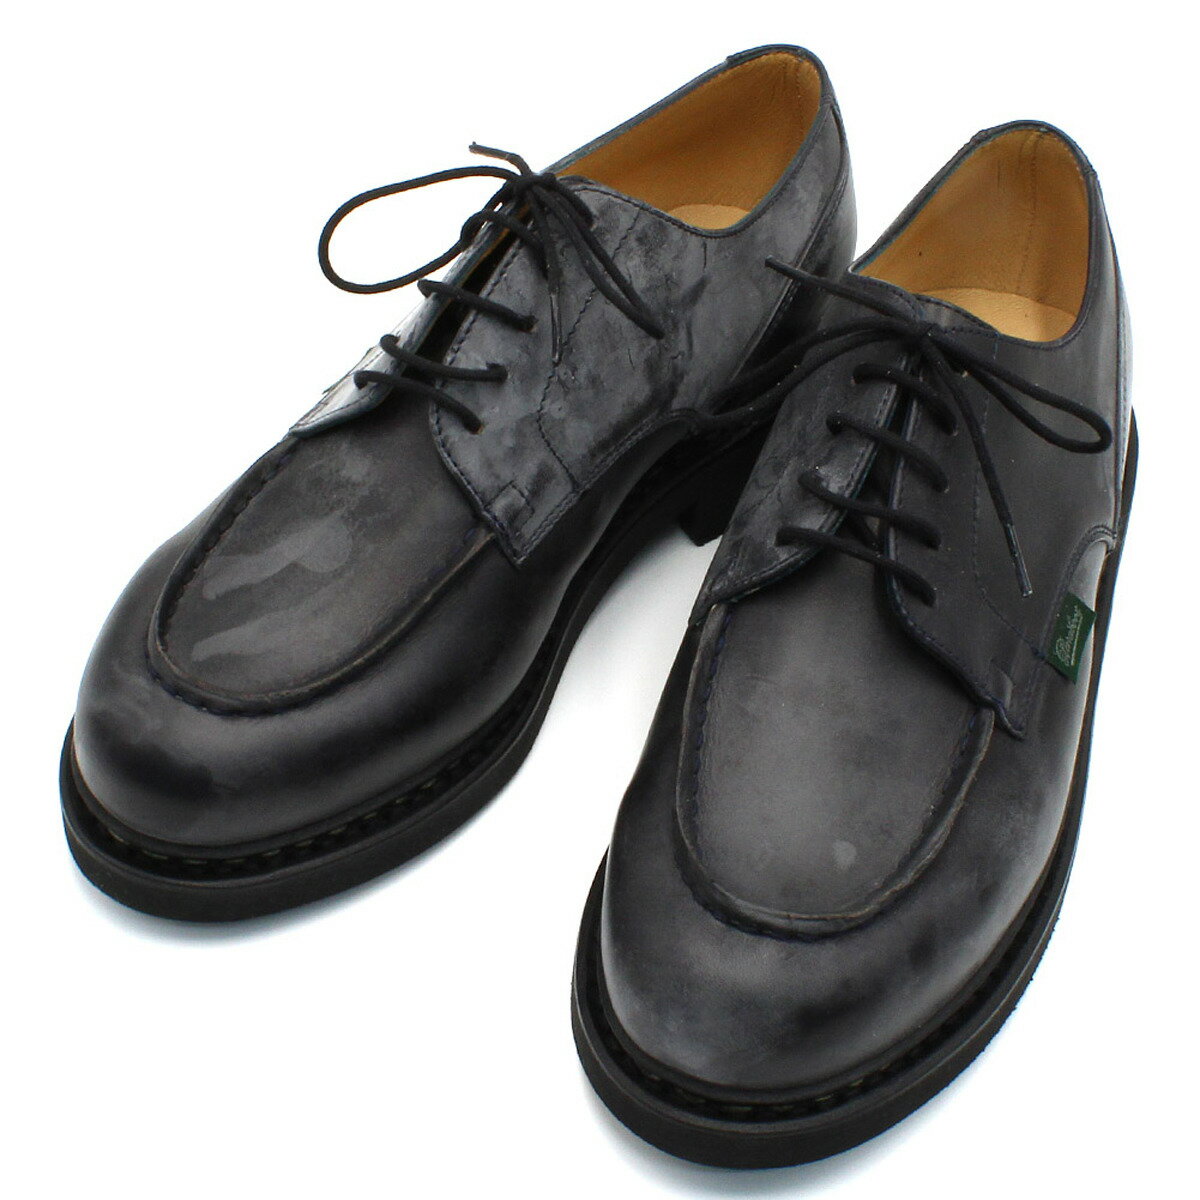 パラブーツ PARABOOT 靴 シューズ シャンボード 革靴 紳士靴 7107-10 CHAMBORD ビジネス カジュアル メンズ ネイビー レザー